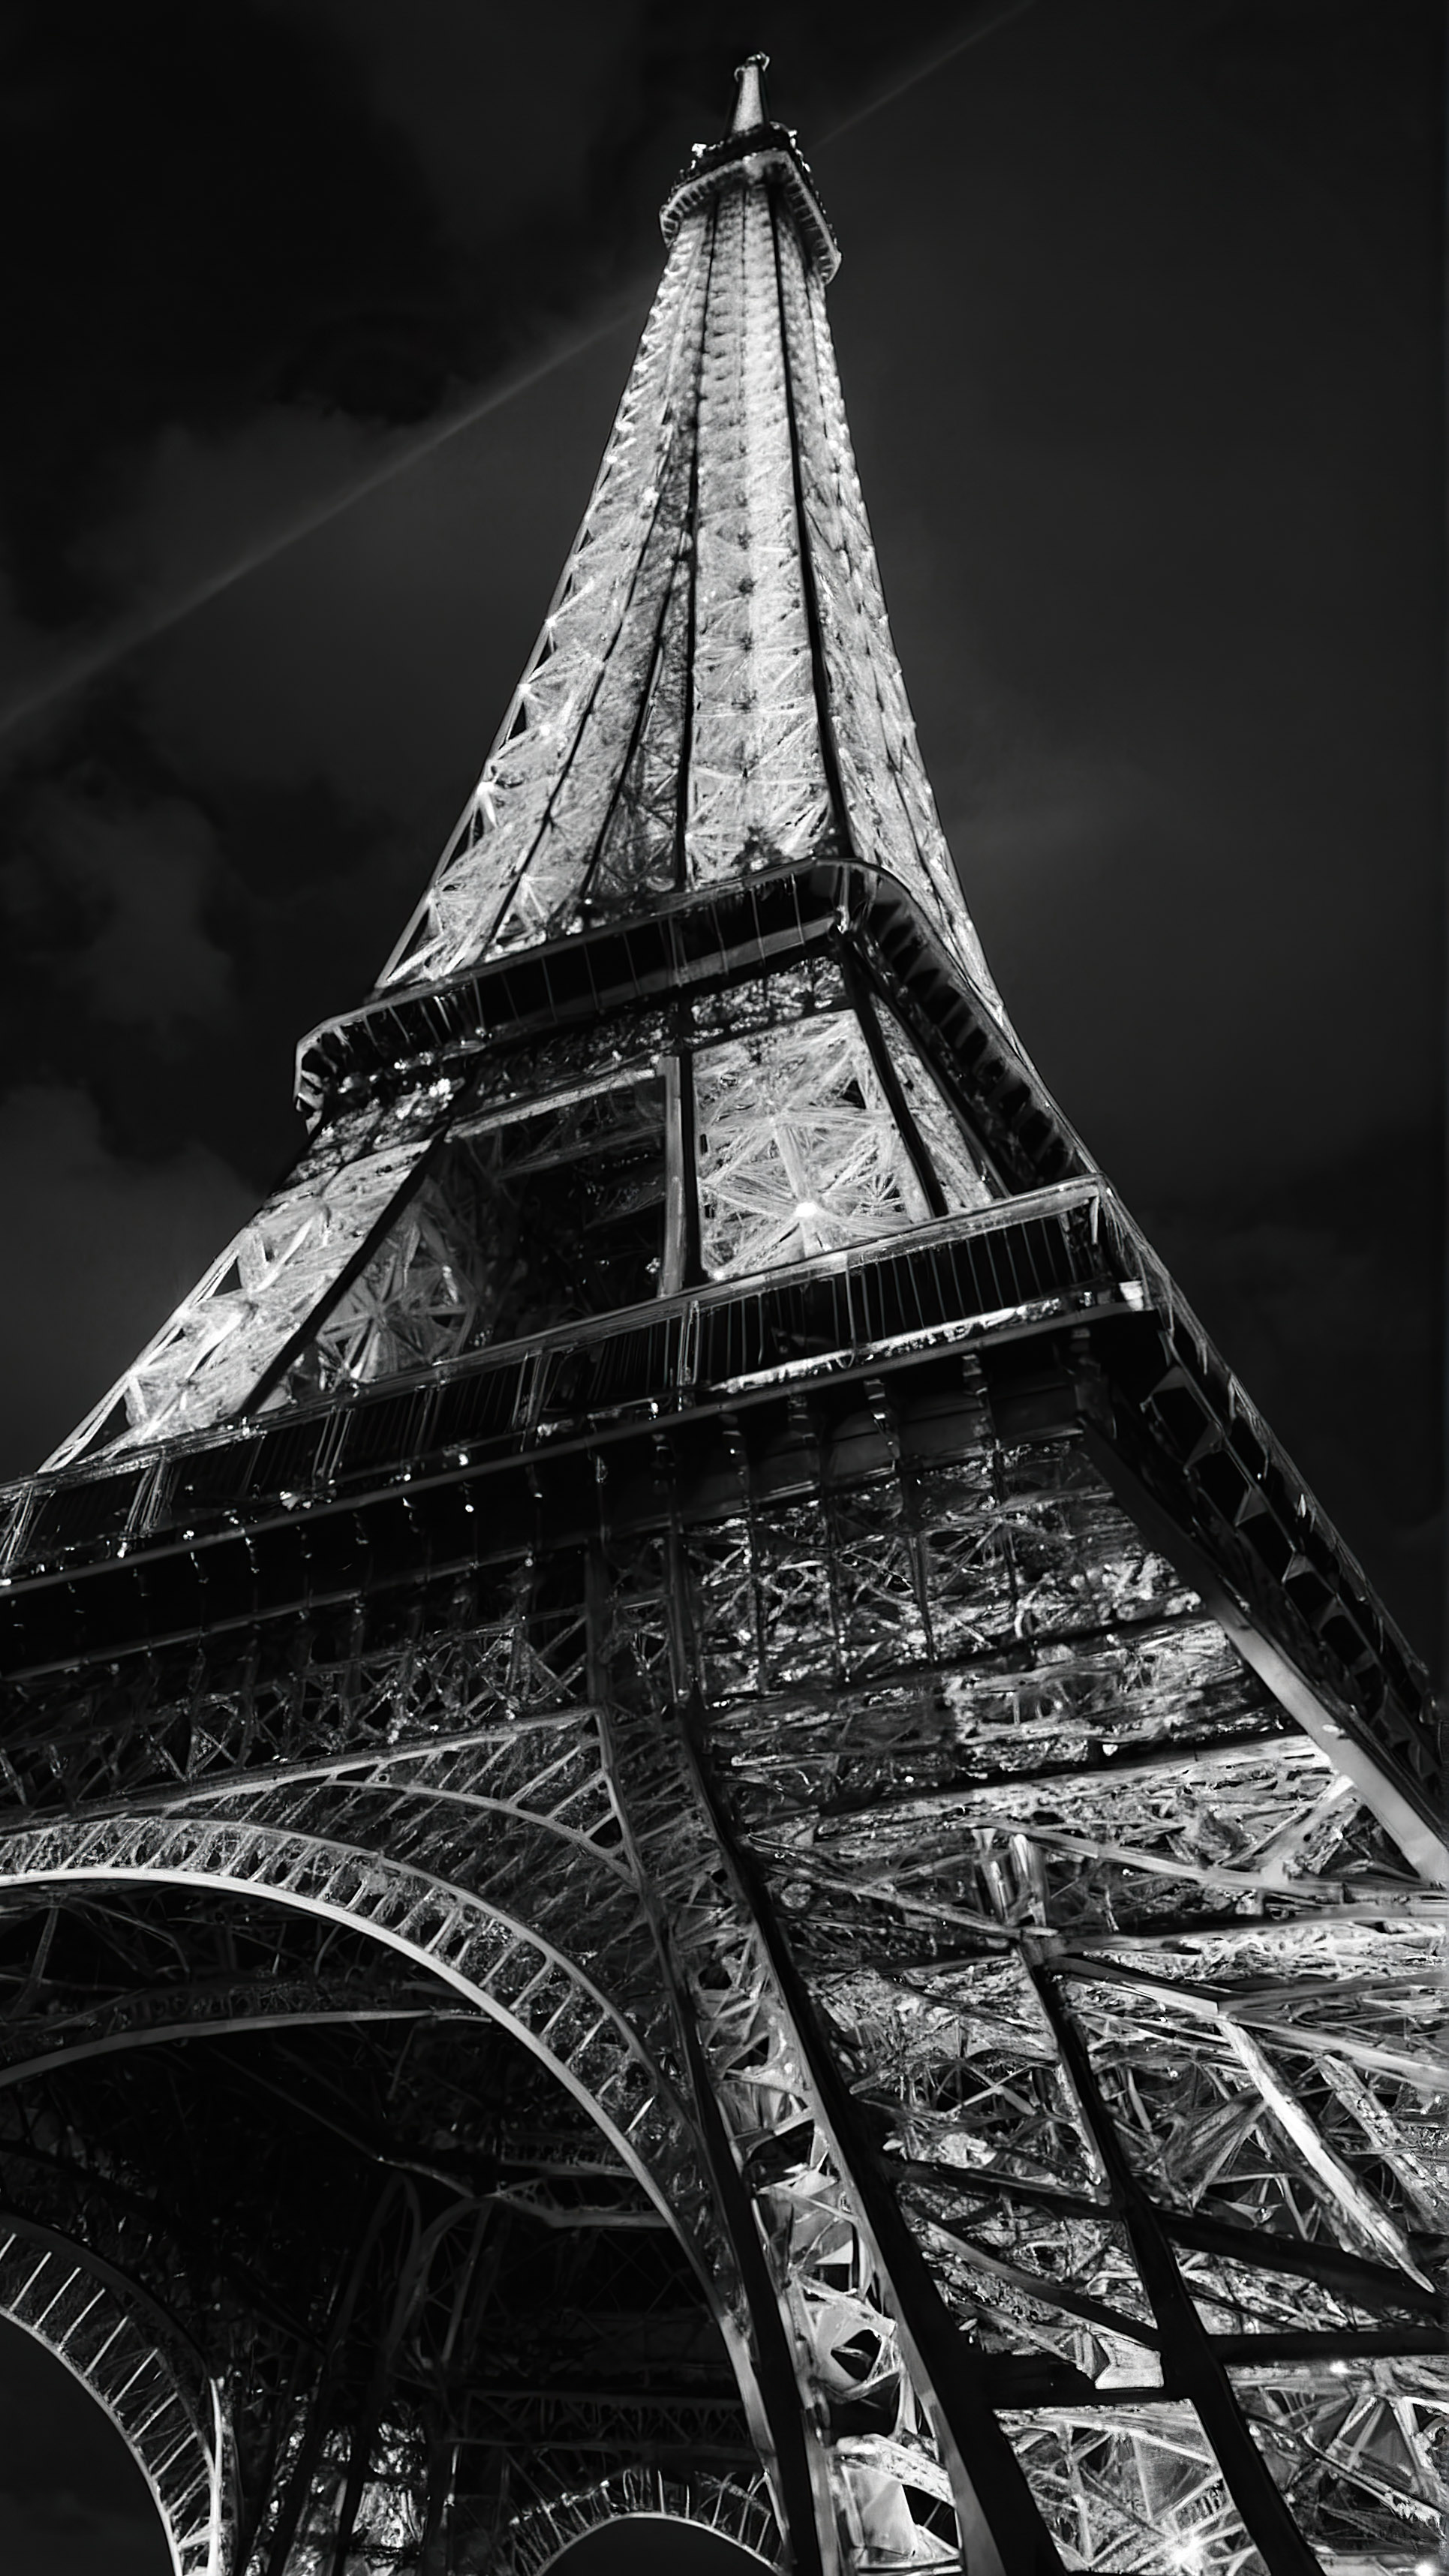 Découvrez l'élégance de notre fond d'écran noir pour iPhone en 4K, mettant en vedette la Tour Eiffel, se dressant fièrement et brillamment éclairée contre un ciel noir. 